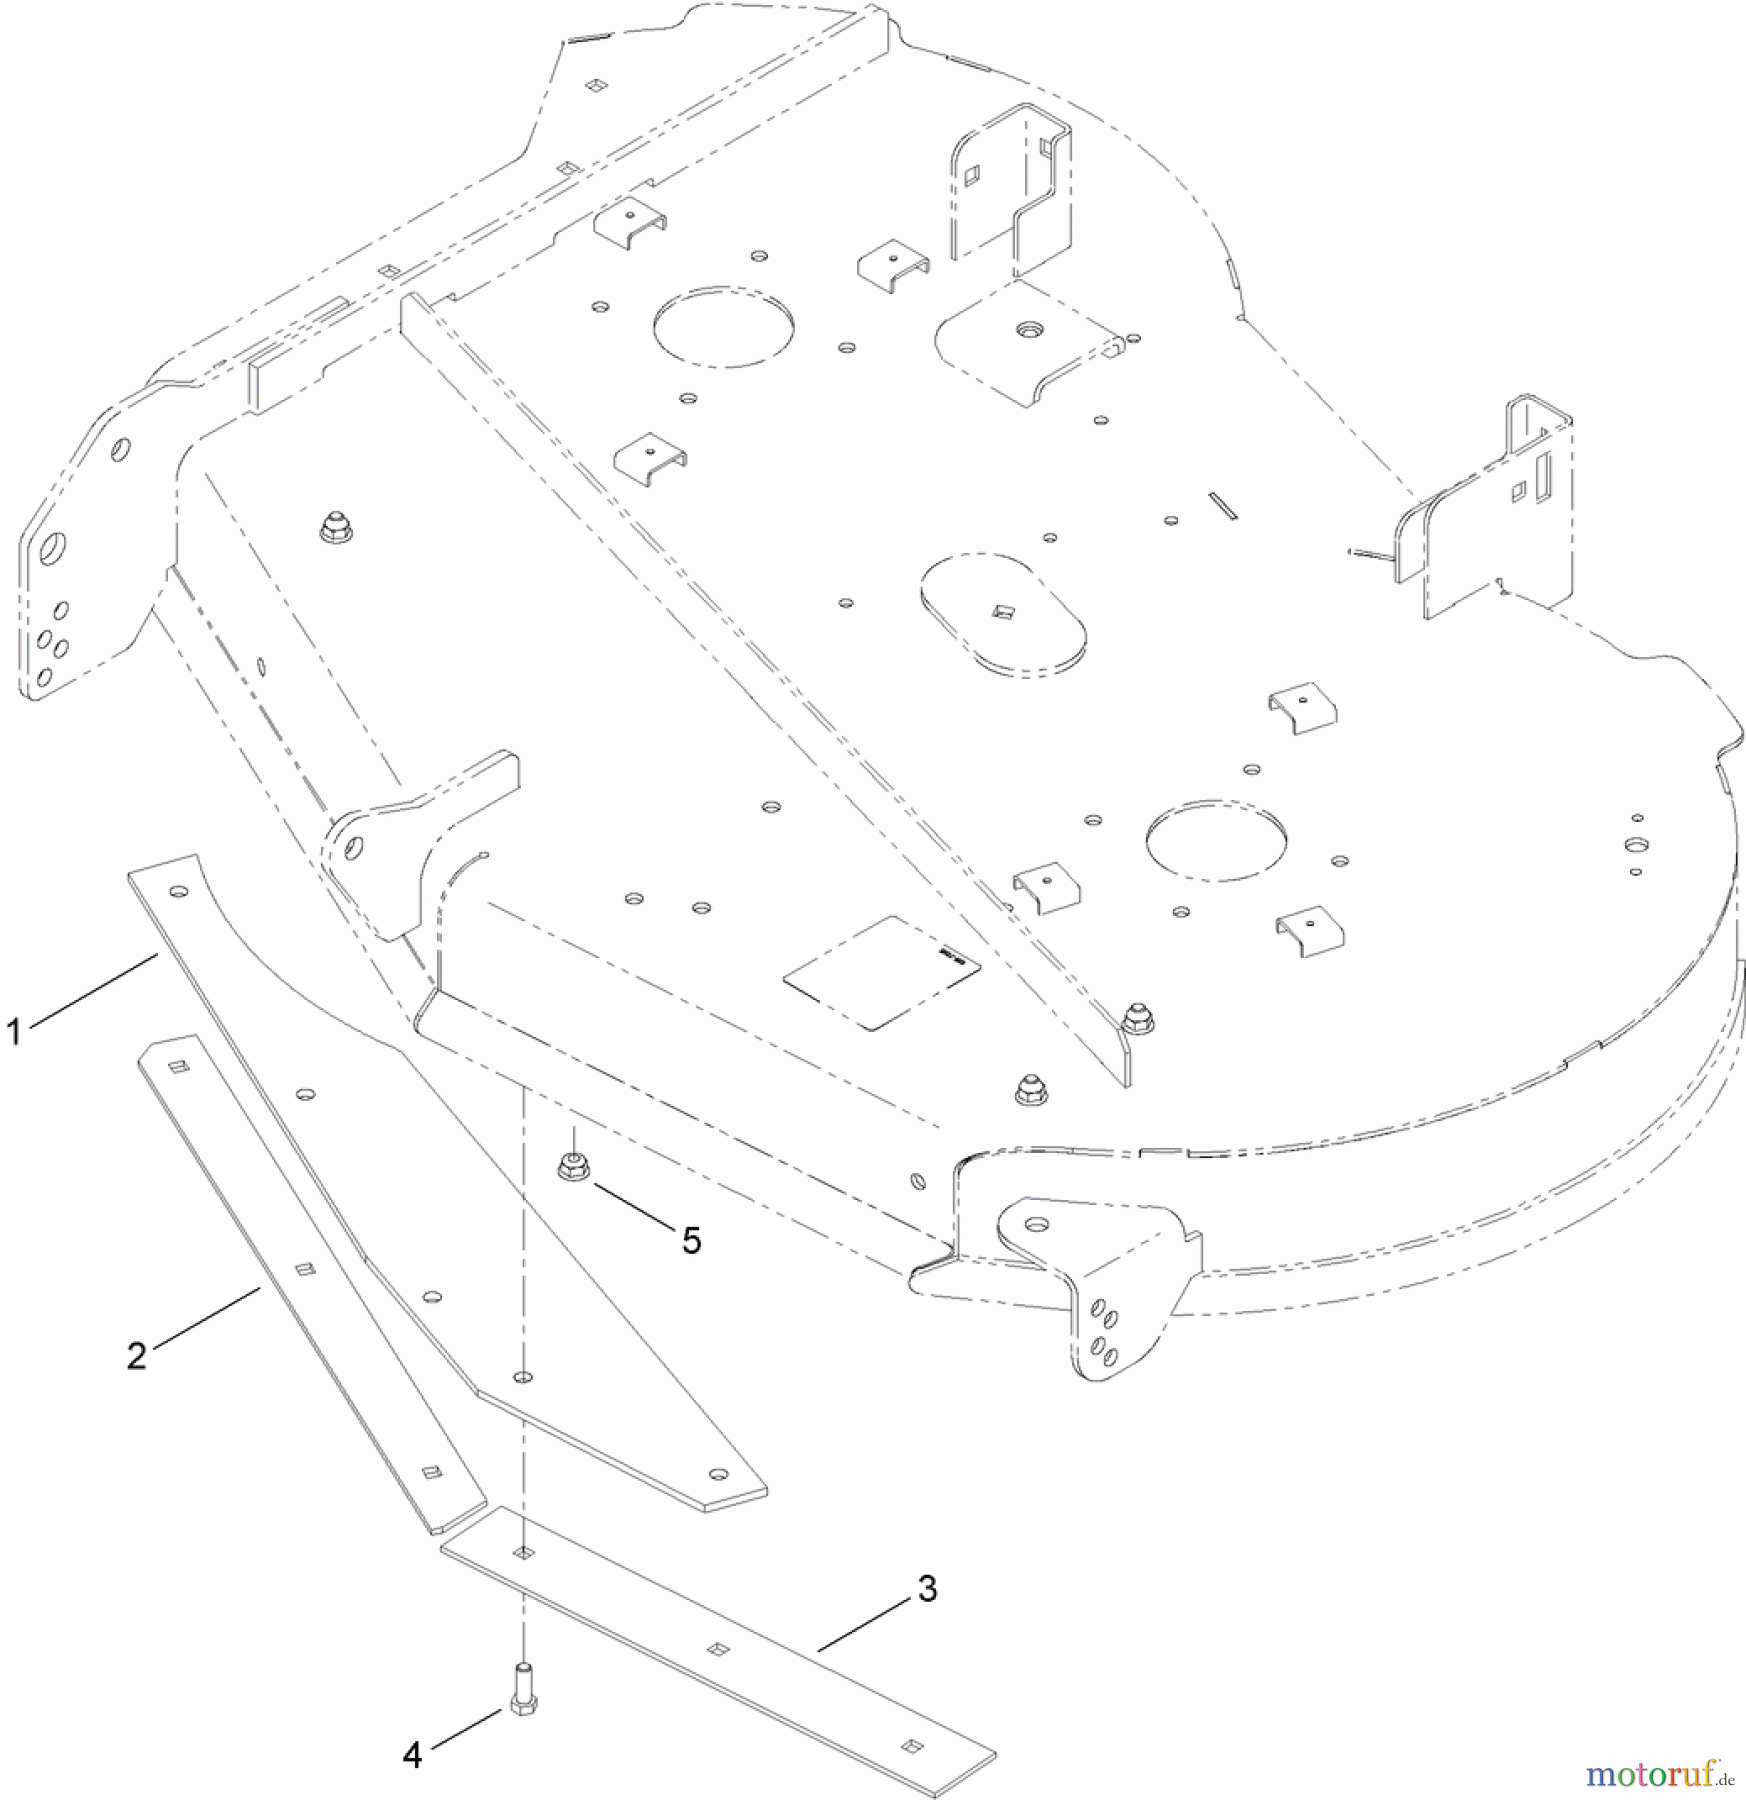  Toro Neu Accessories, Mower 121-5698 - Toro Bagging Enhancement Kit, Zero-Turn-Radius Riding Mower with 42